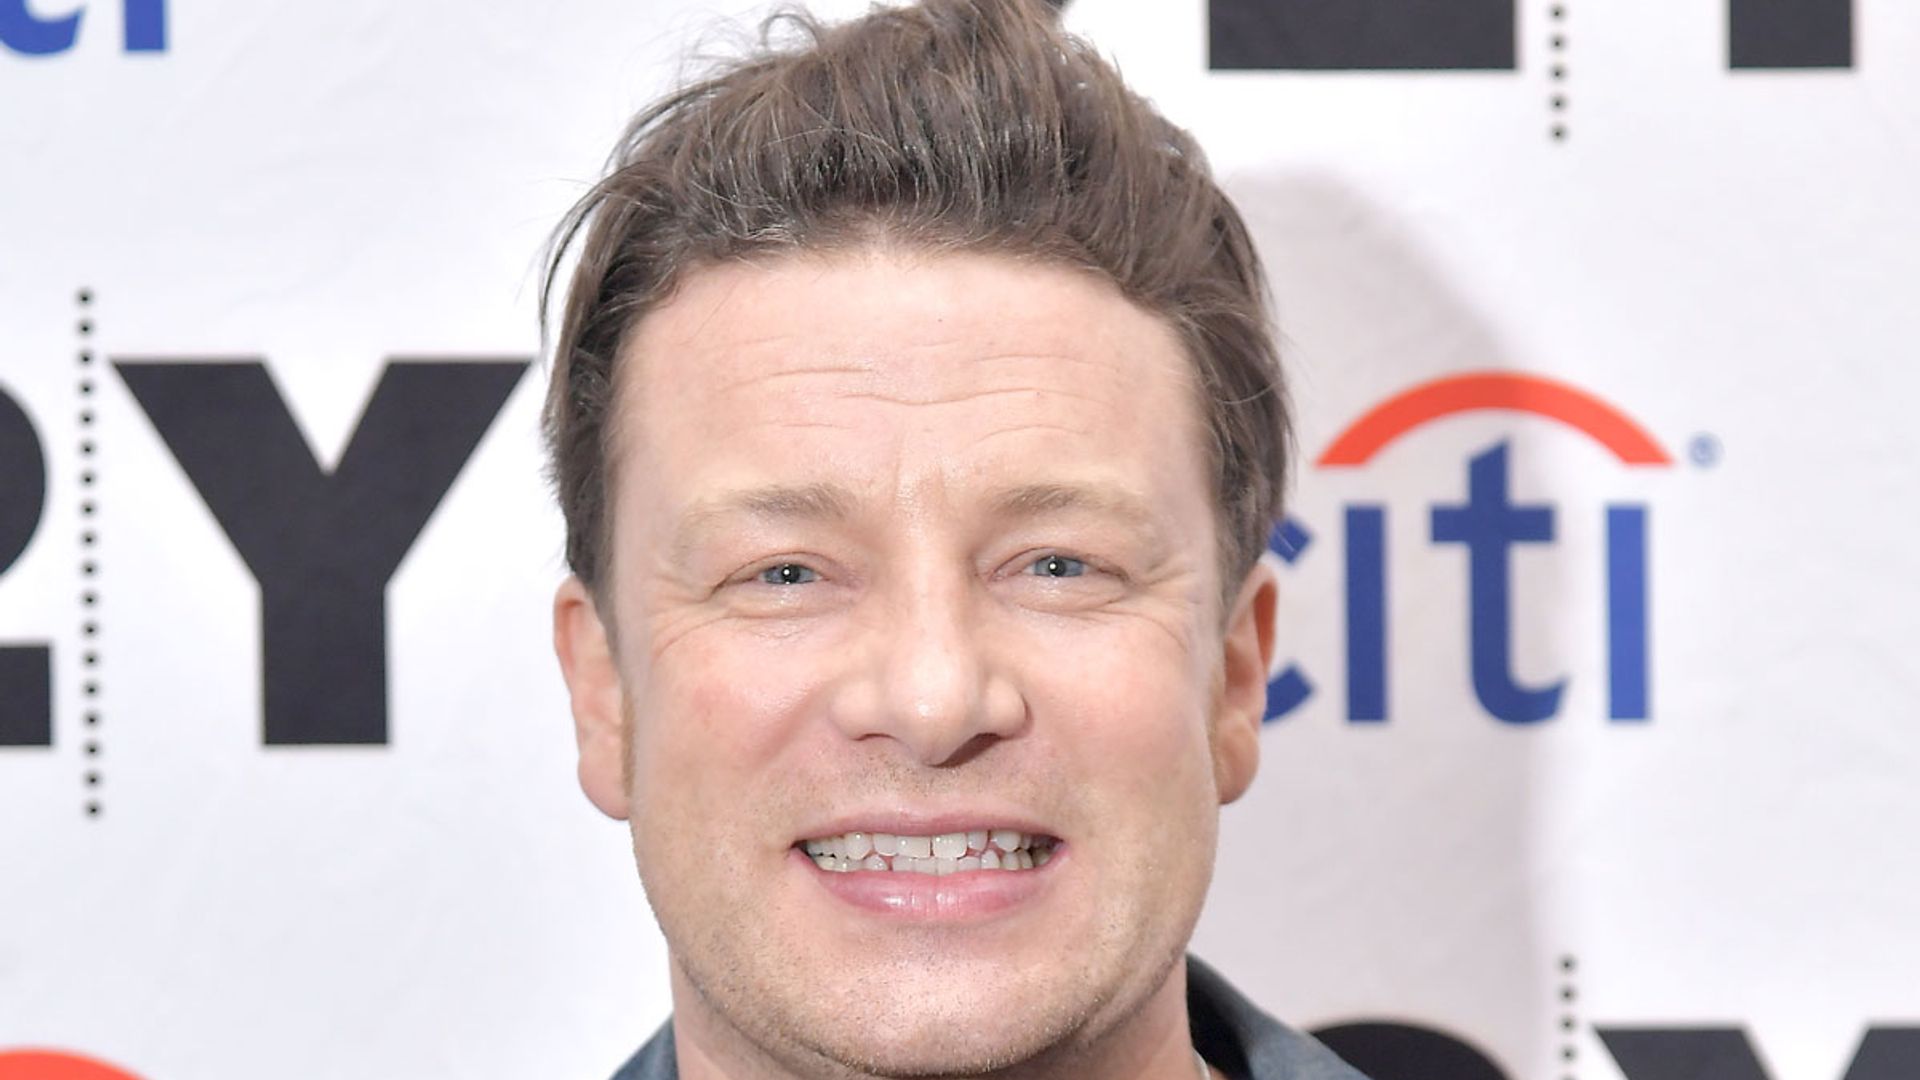 Jamie Oliver reveals cooking got him through 'strange' few months